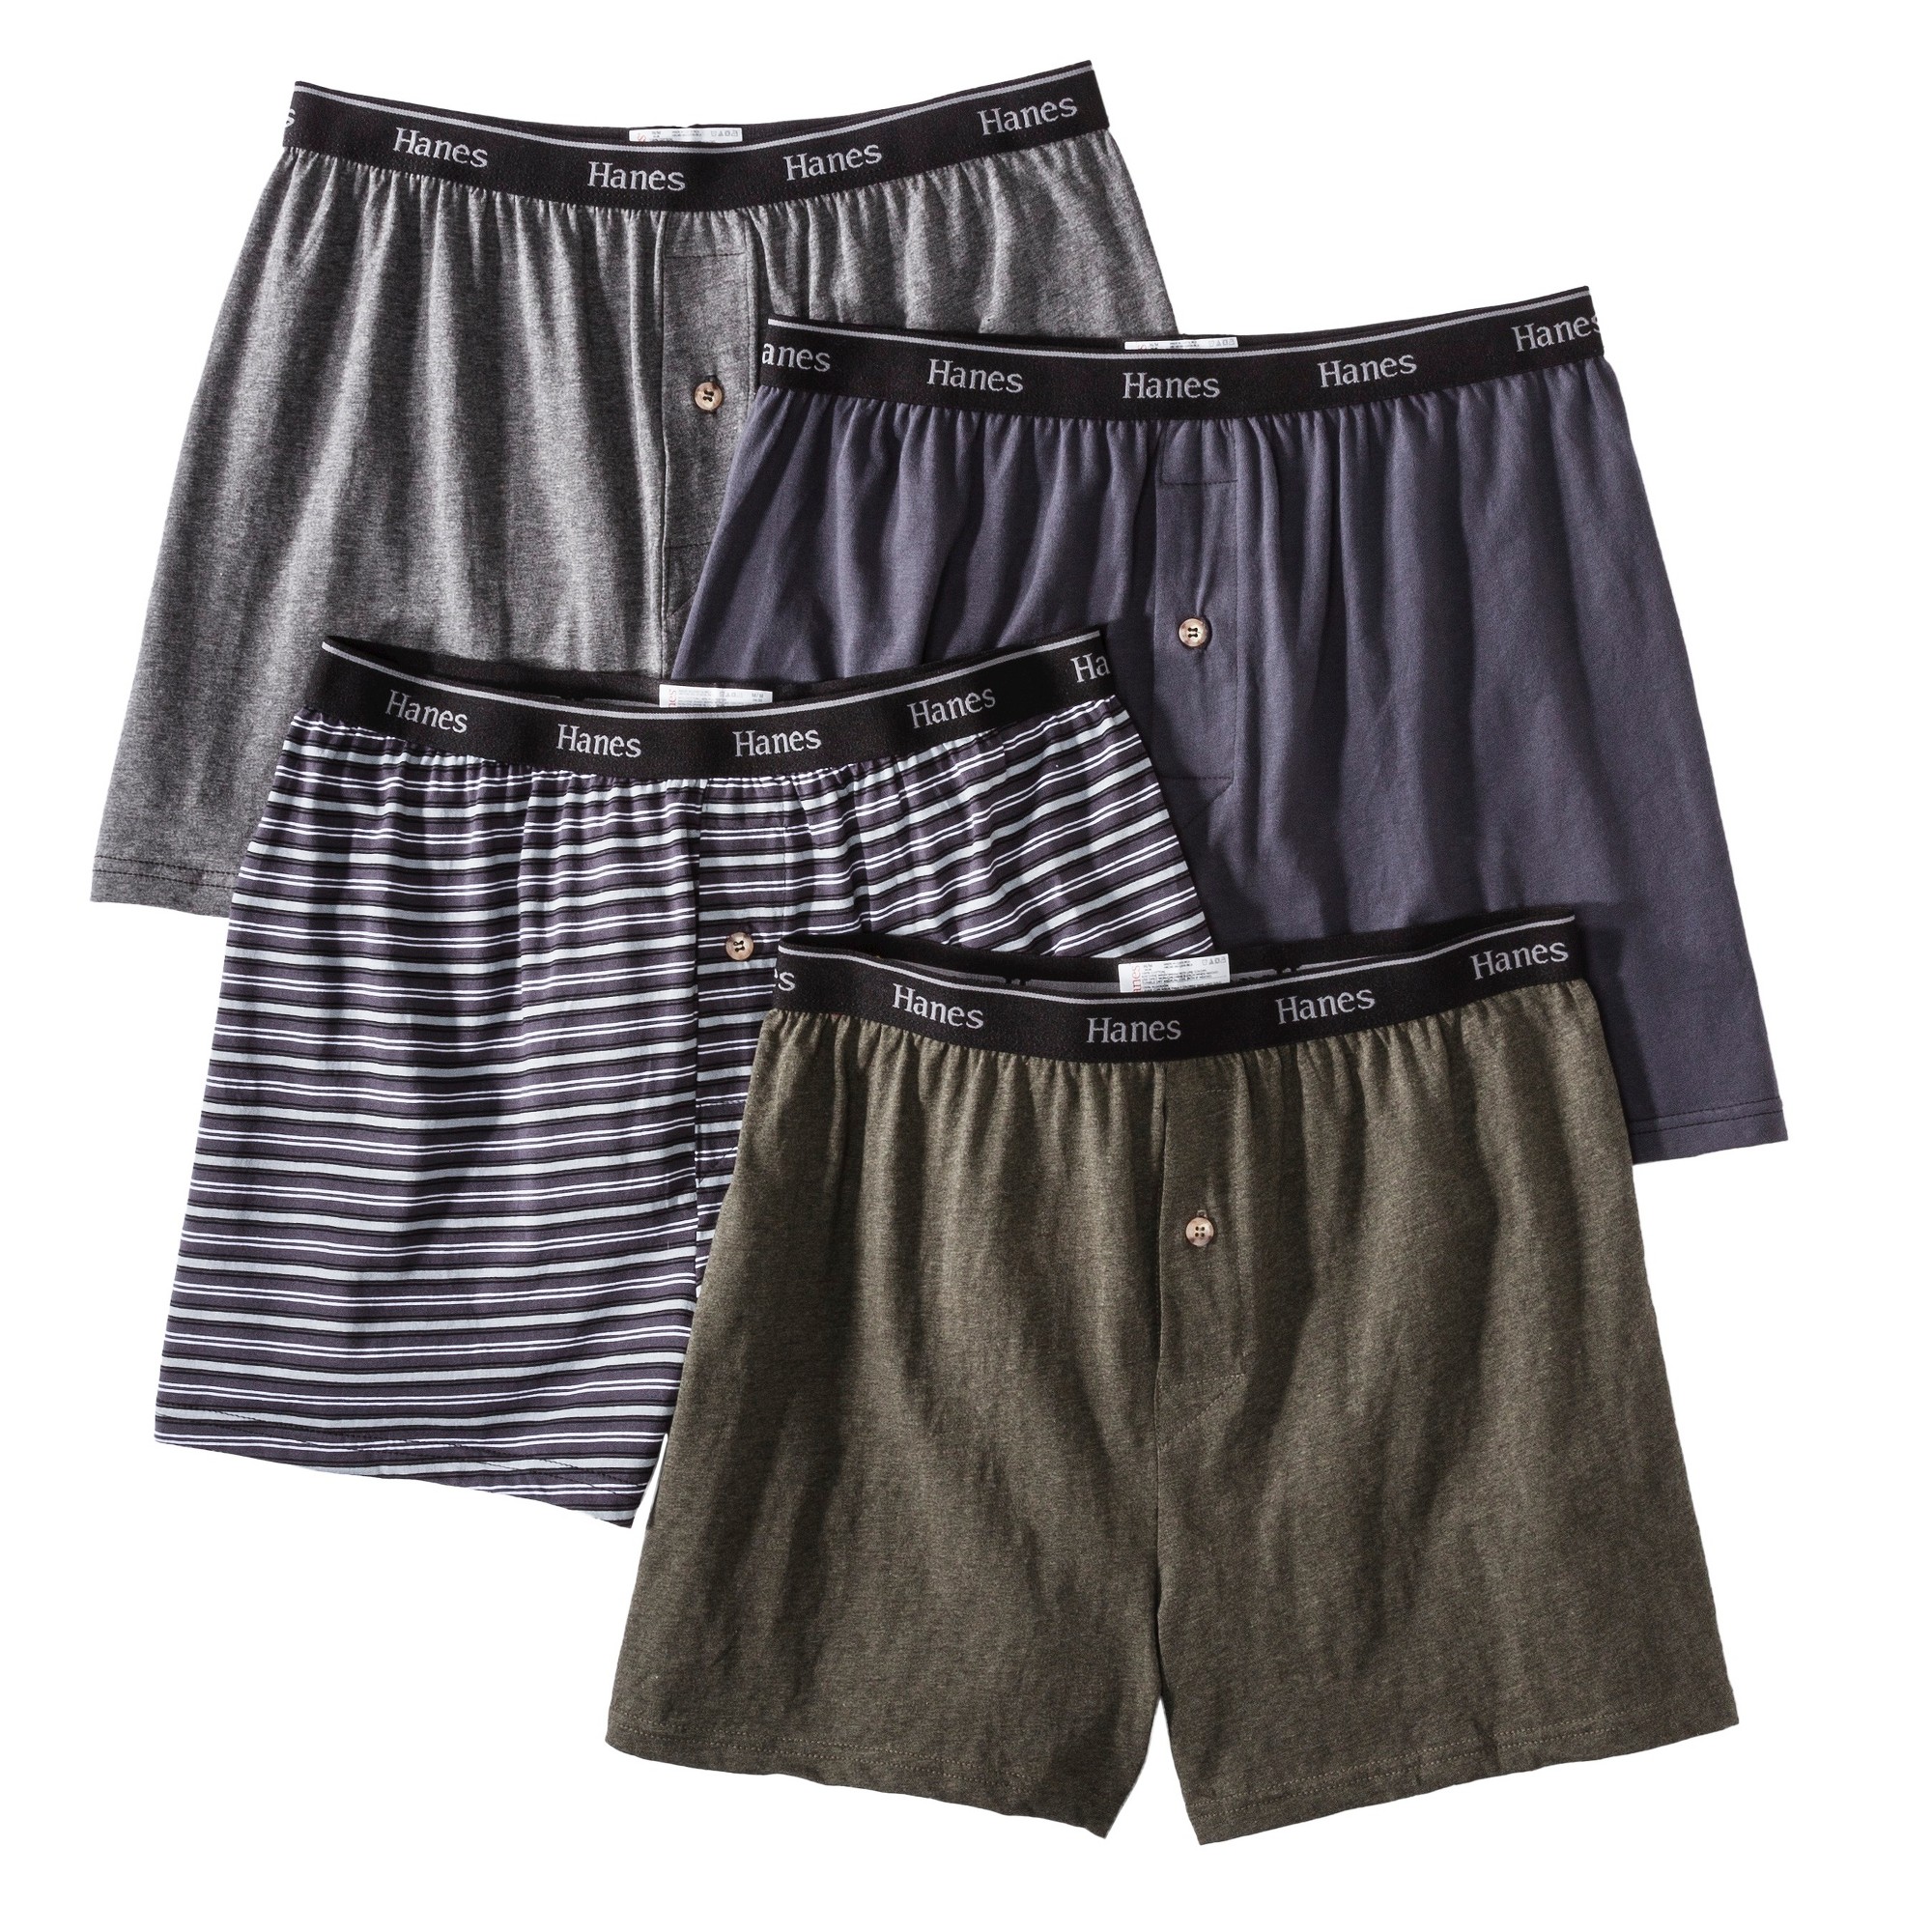 Hanes Premium Men's 4pk Knit Boxer Briefs - Gray M, Size: Small, MultiColored